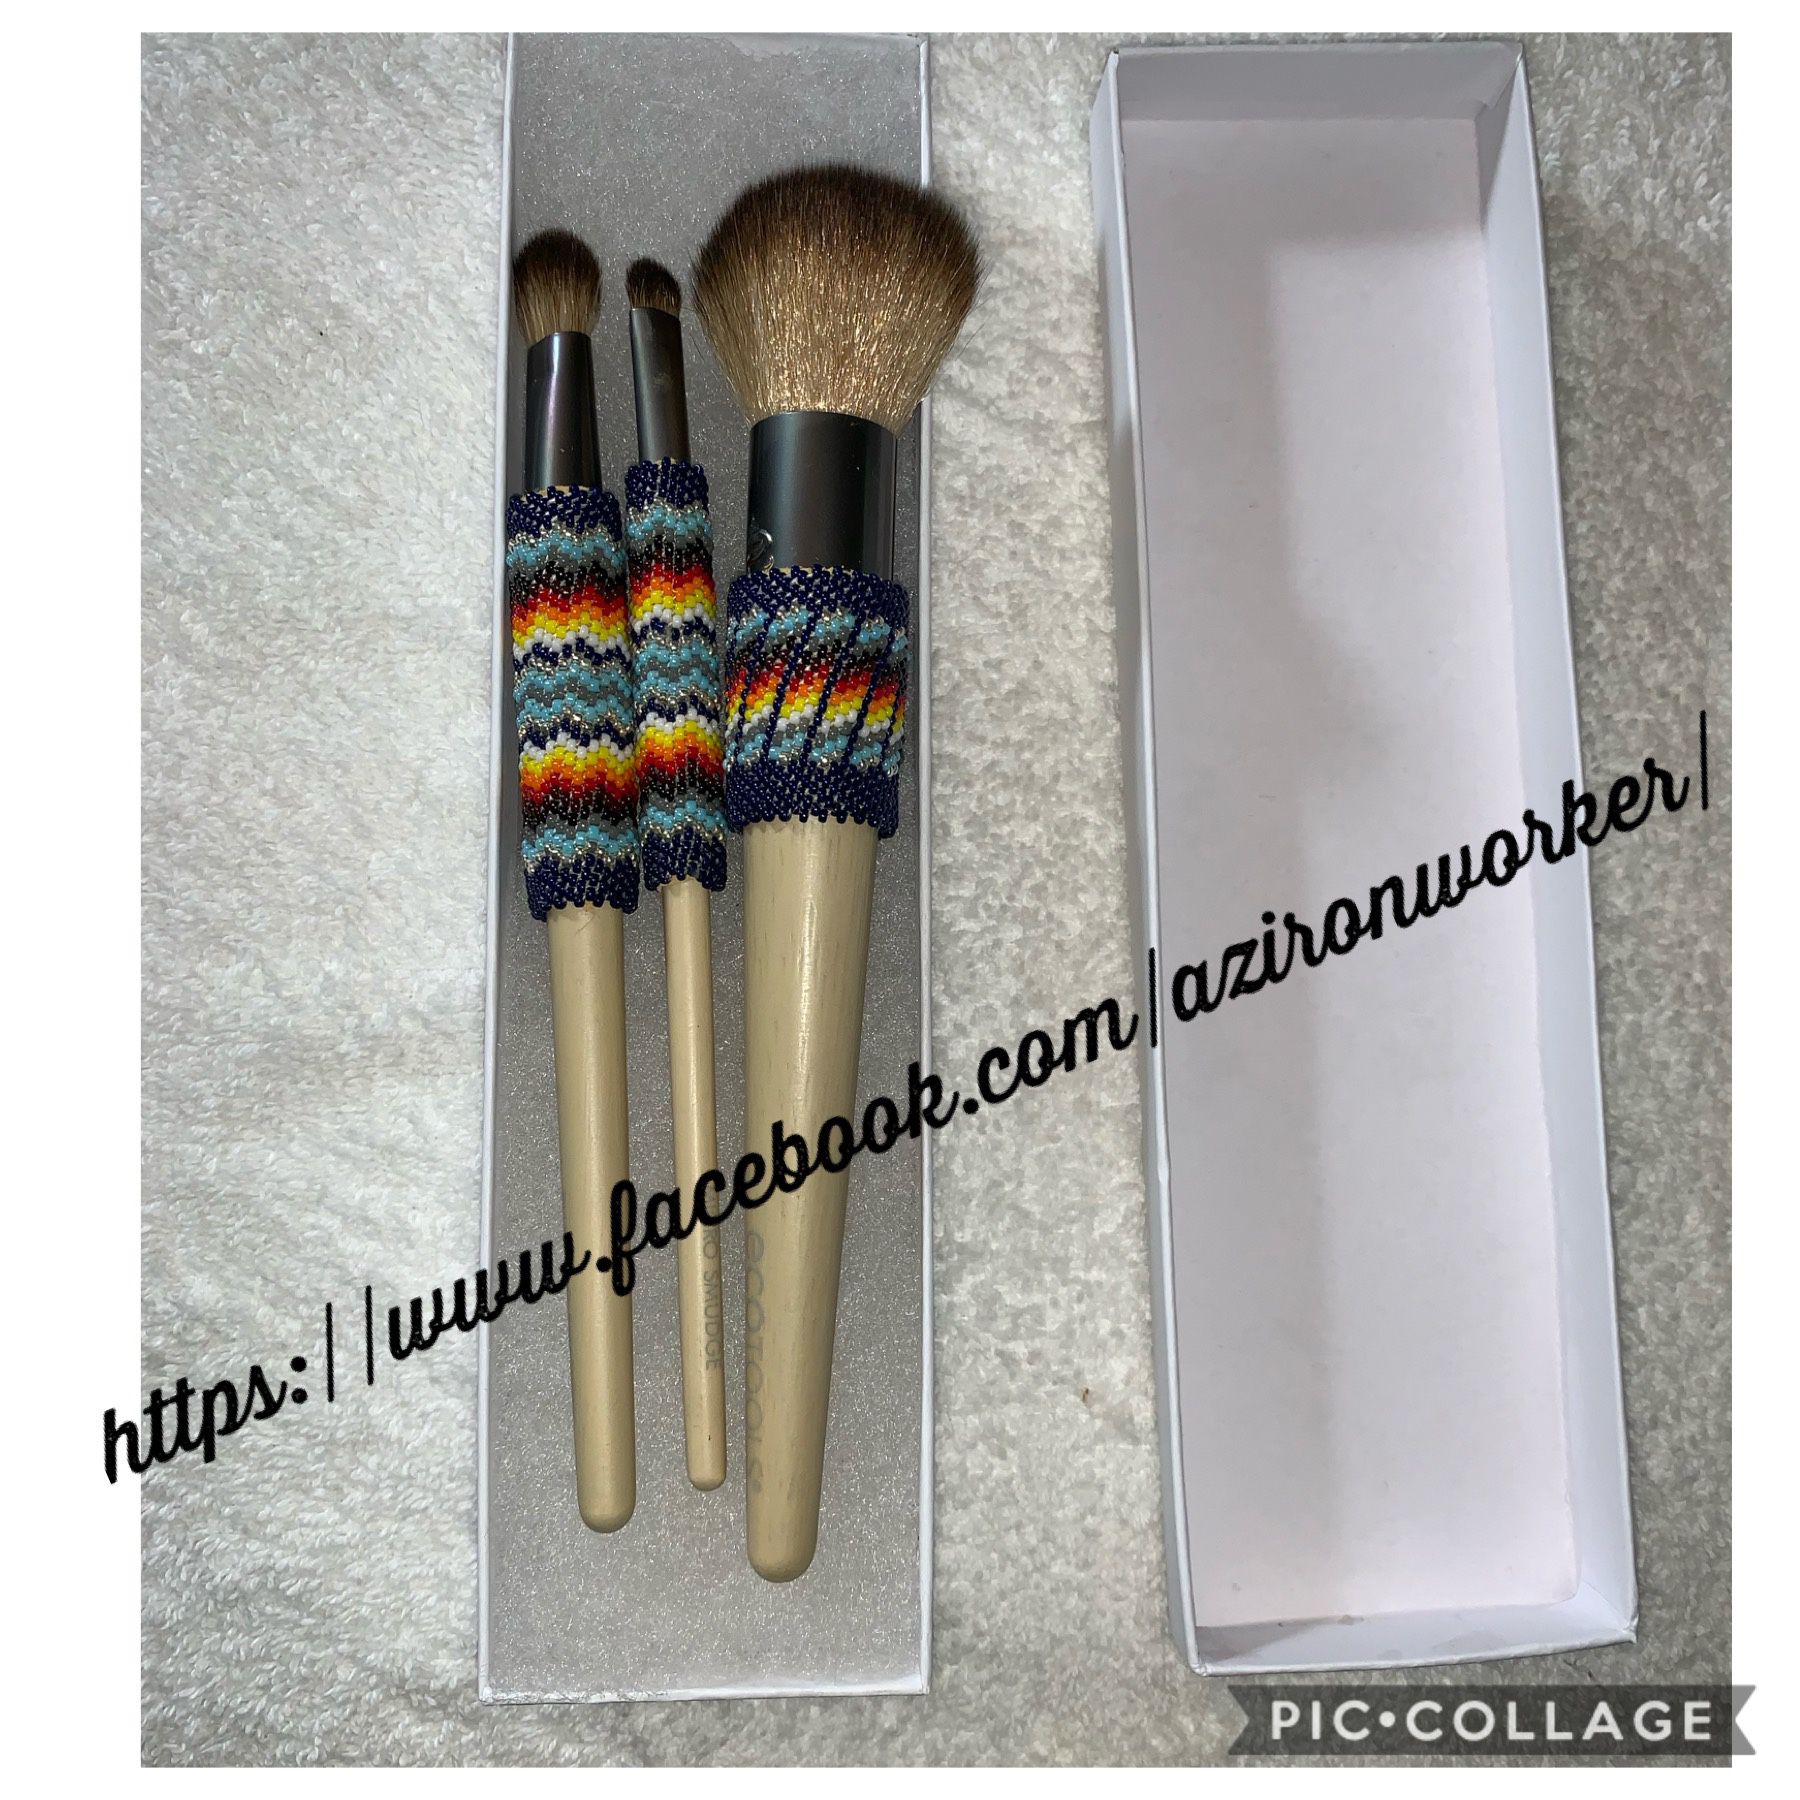 Native American Beaded Makeup Brush 3